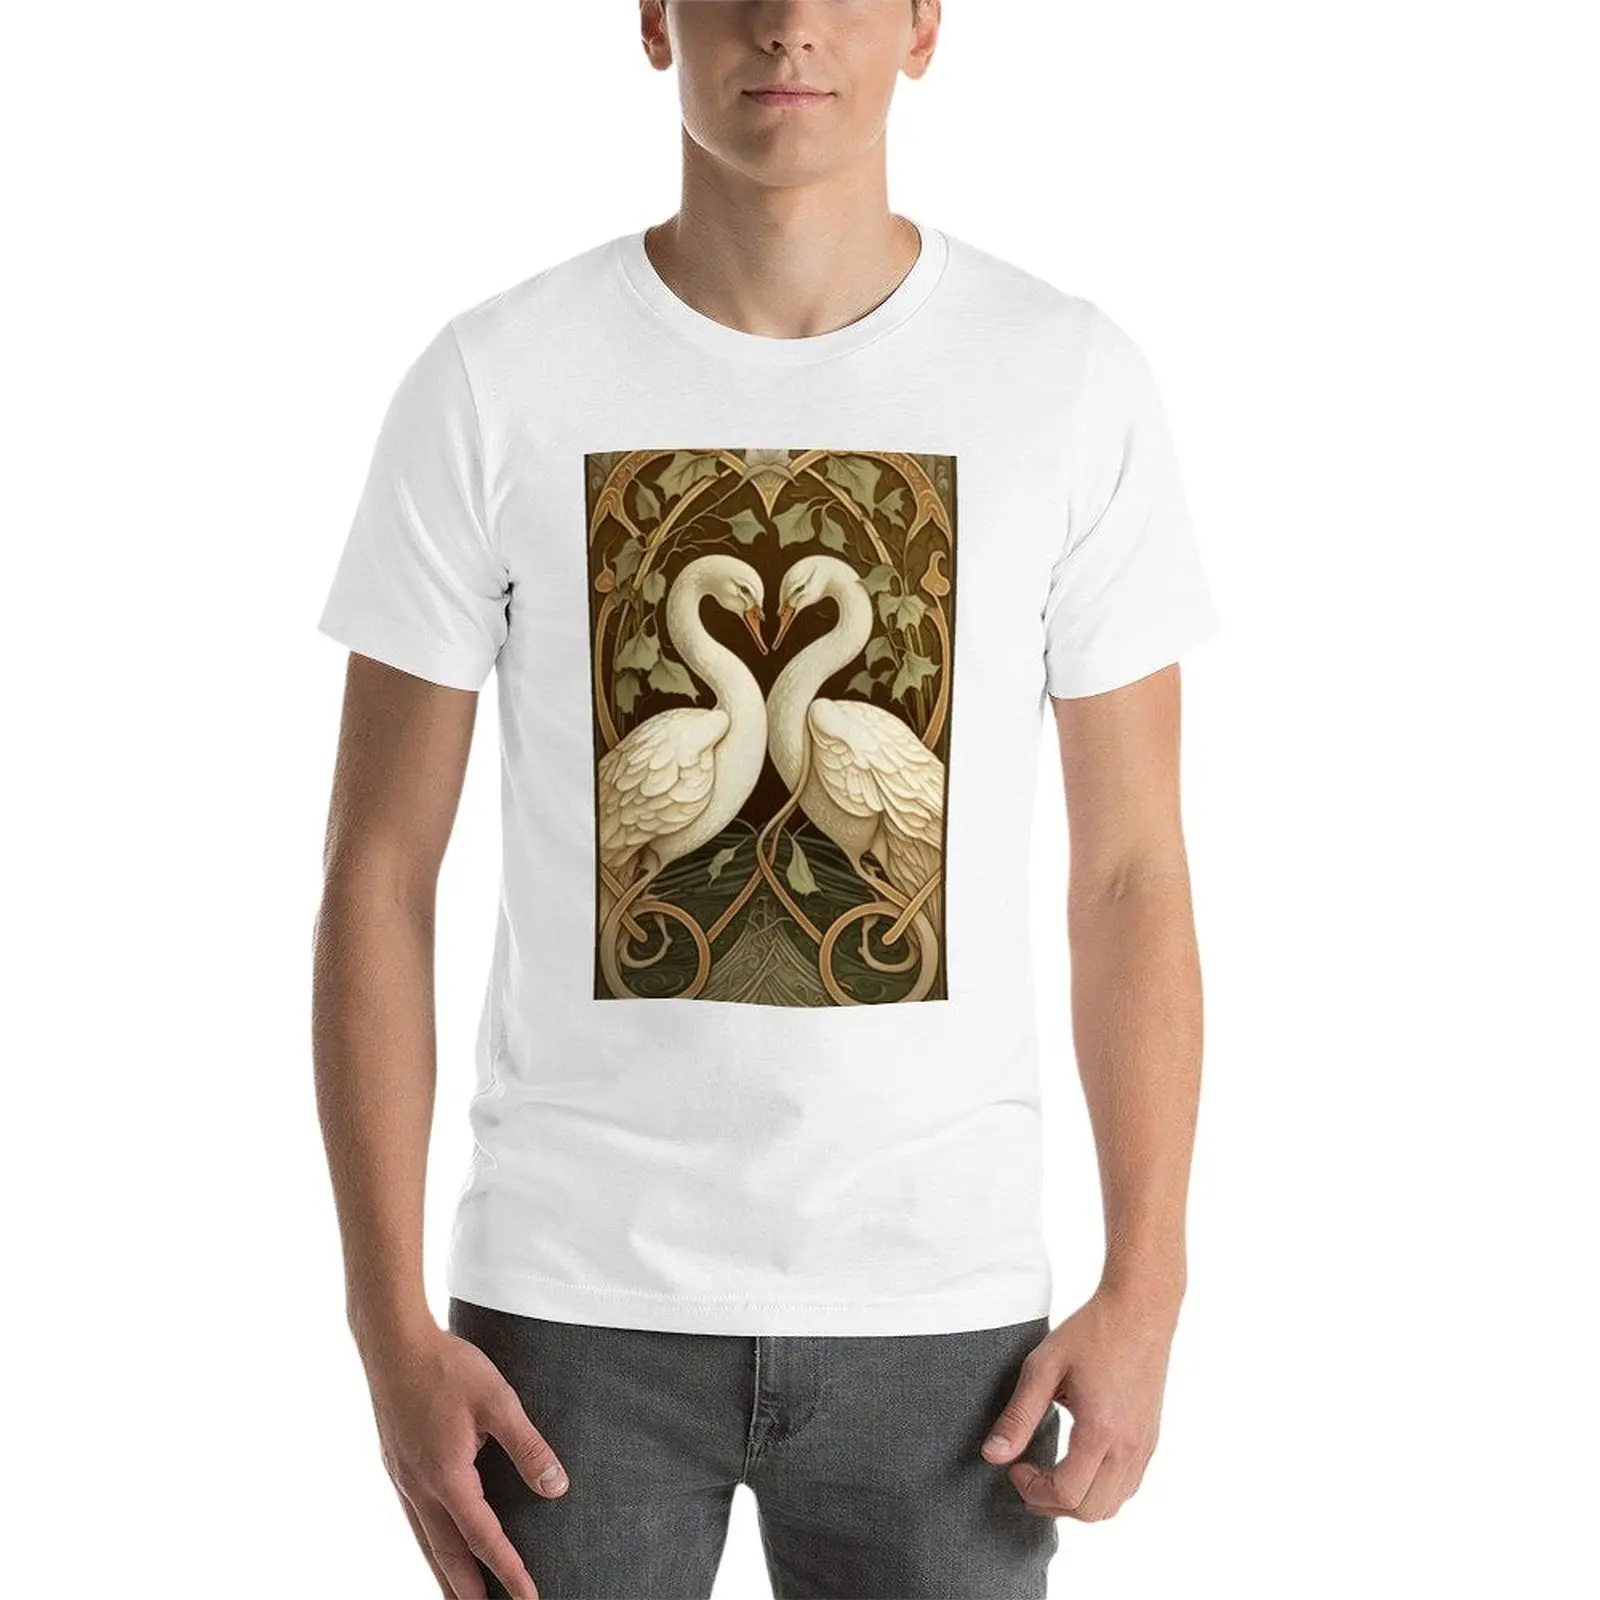 Новая футболка Romantic Swans, футболки на заказ, эстетичная одежда, быстросохнущая футболка, футболки для мальчиков, простые футболки для мужчин Изображение 2